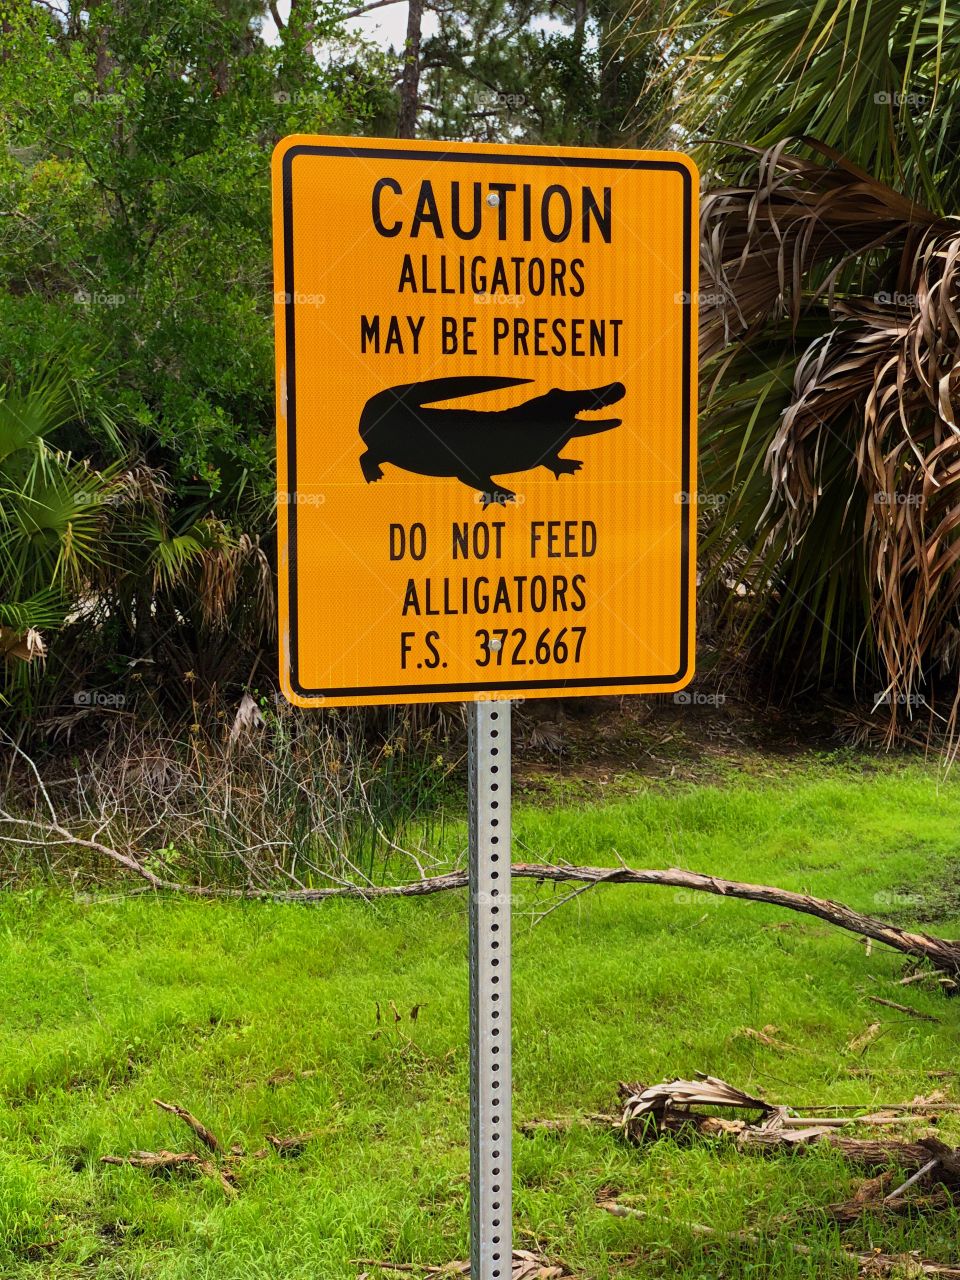 Caution-Alligators sign.